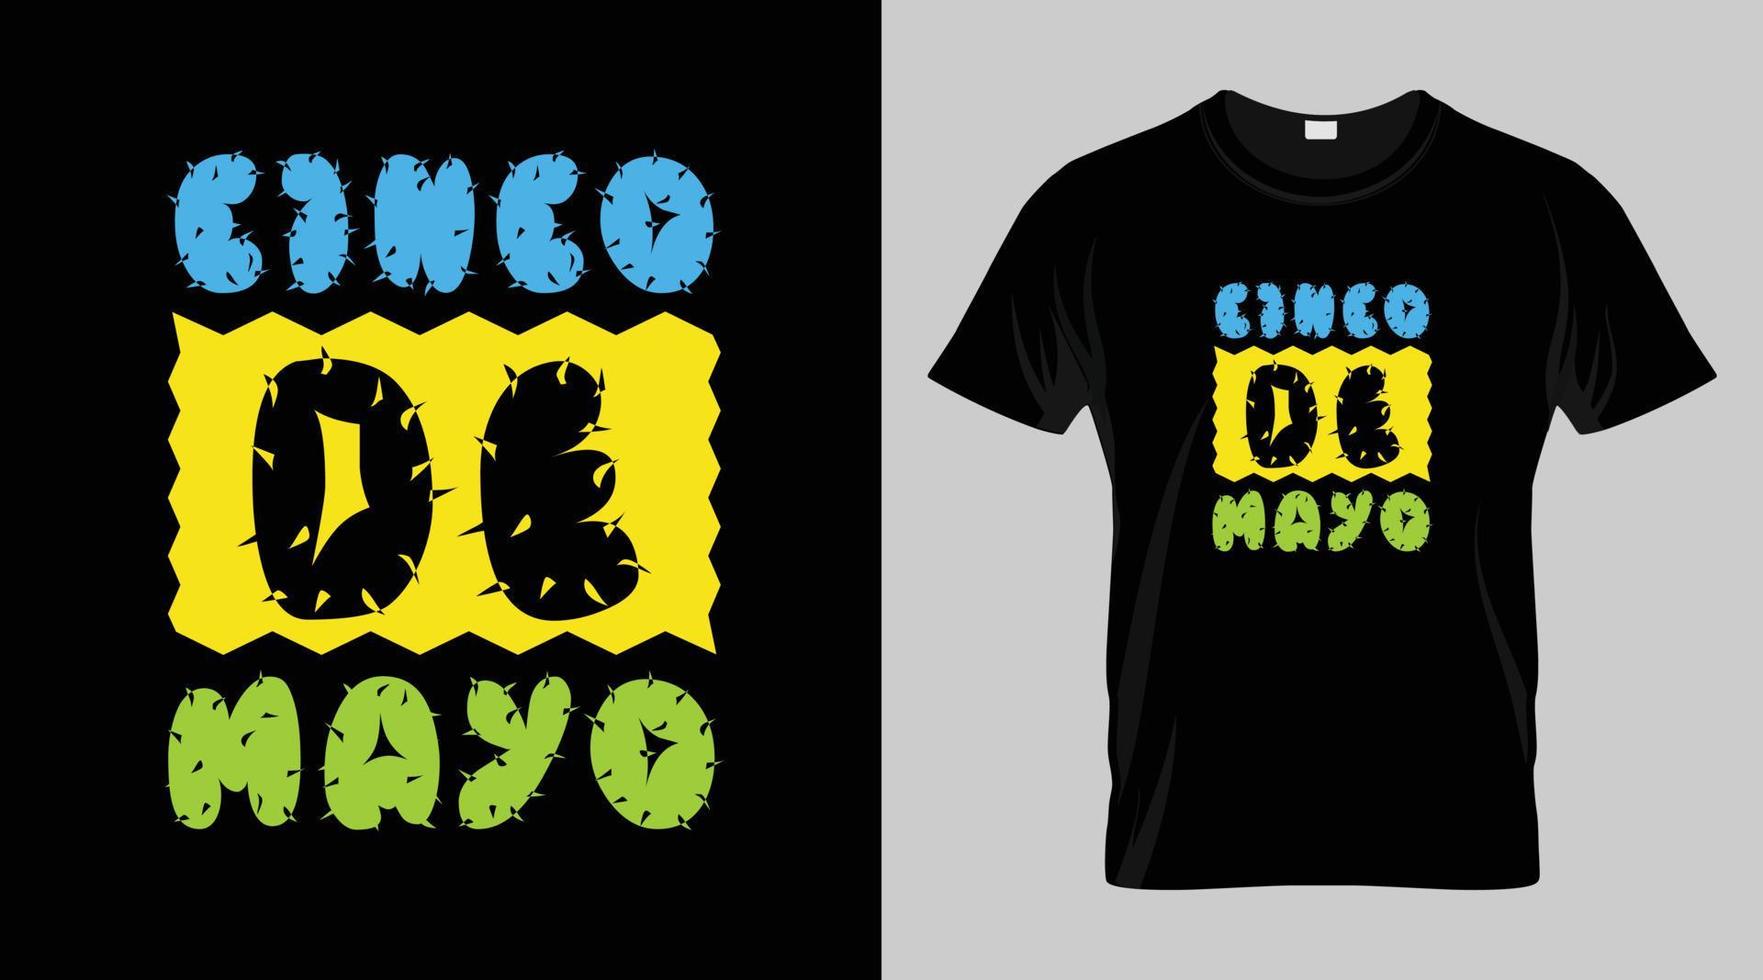 cinco de Mayo Festival T-Shirt Design, Mexikaner Festival Vektor T-Shirt Design